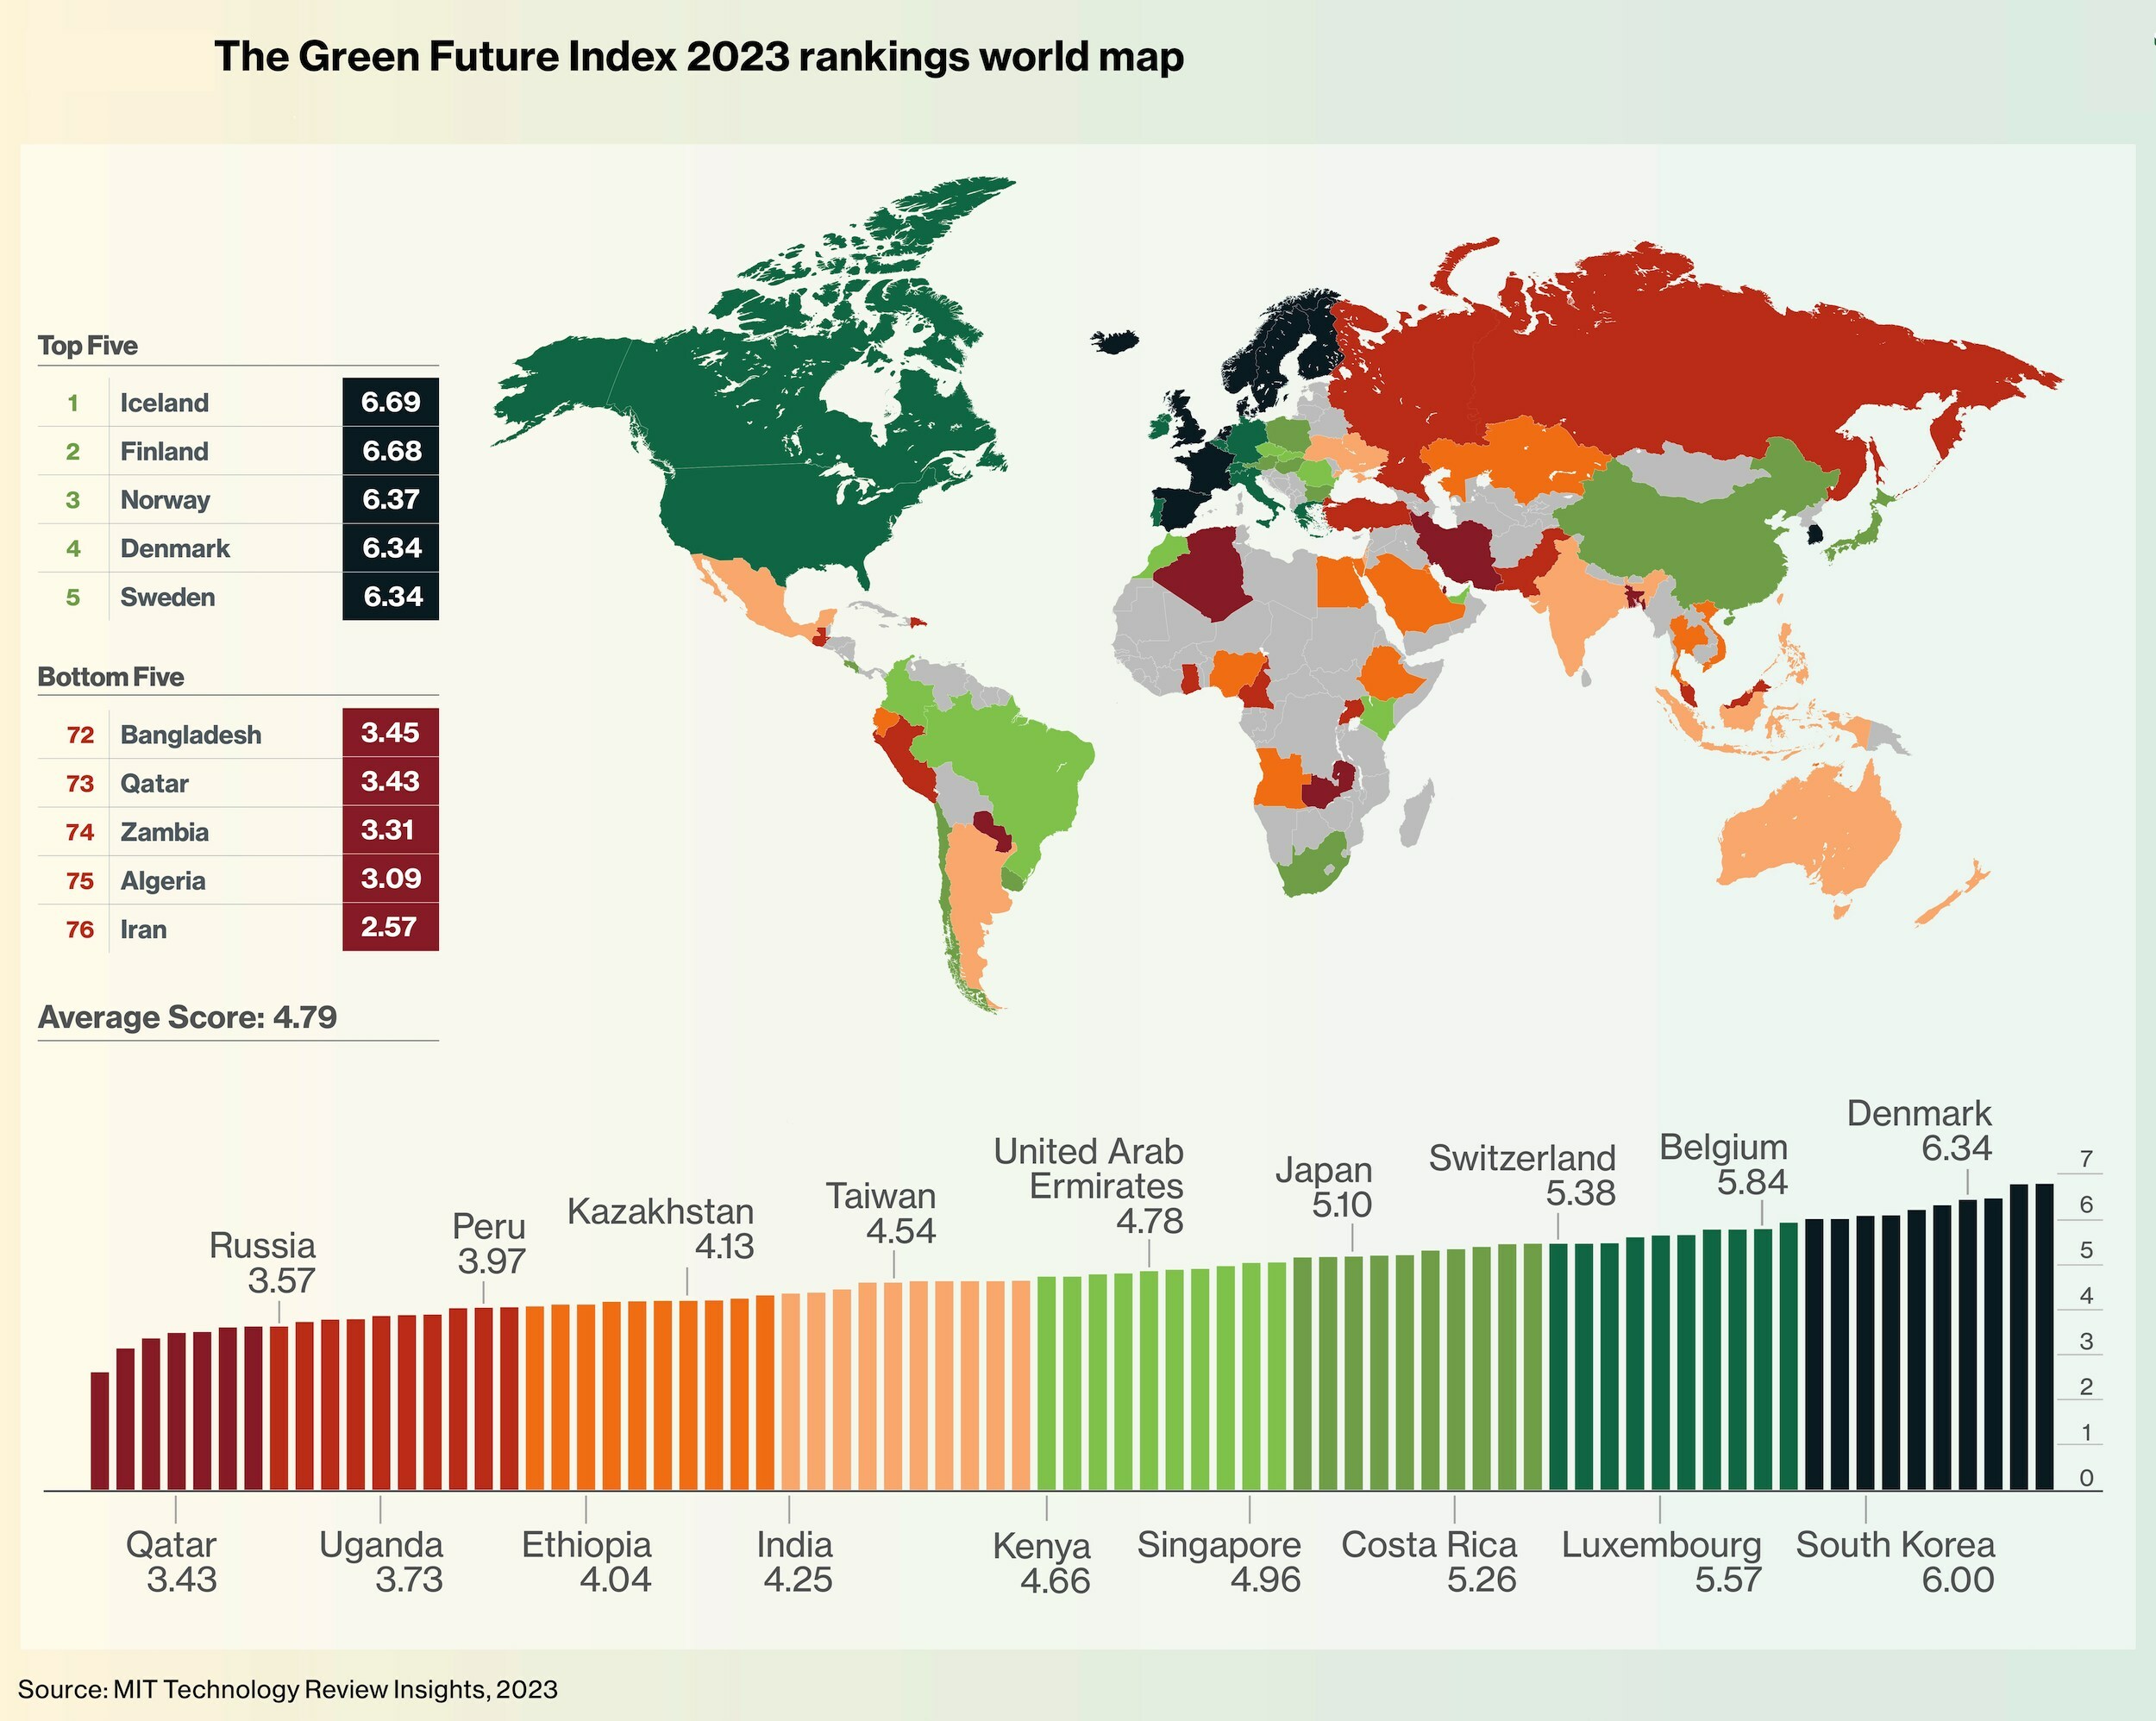 GFI world ranking map